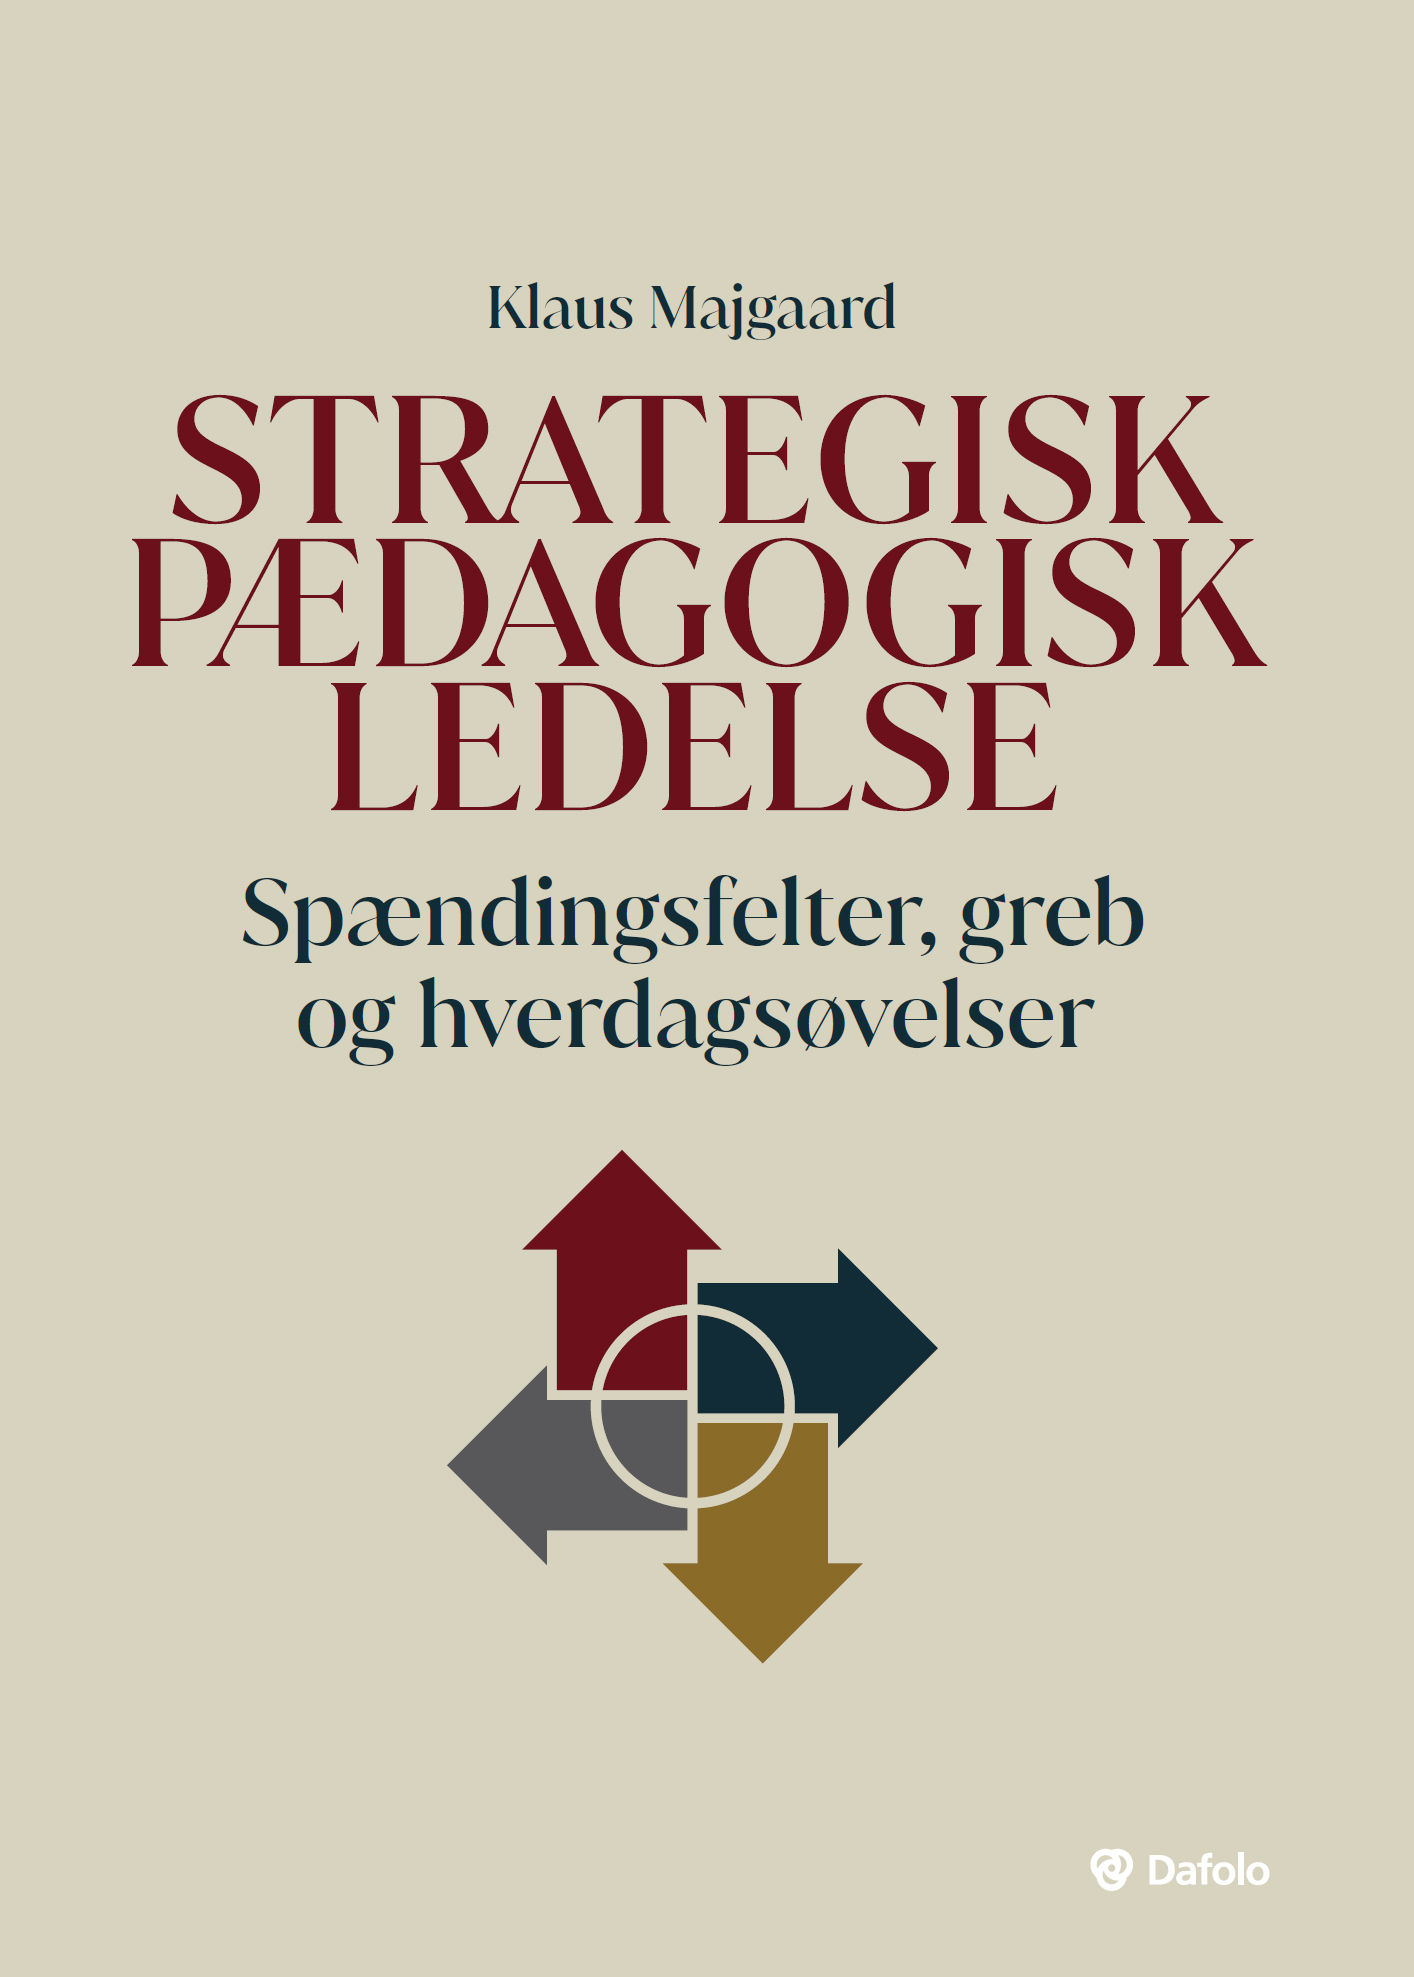 Strategisk pædagogisk ledelse - A/S